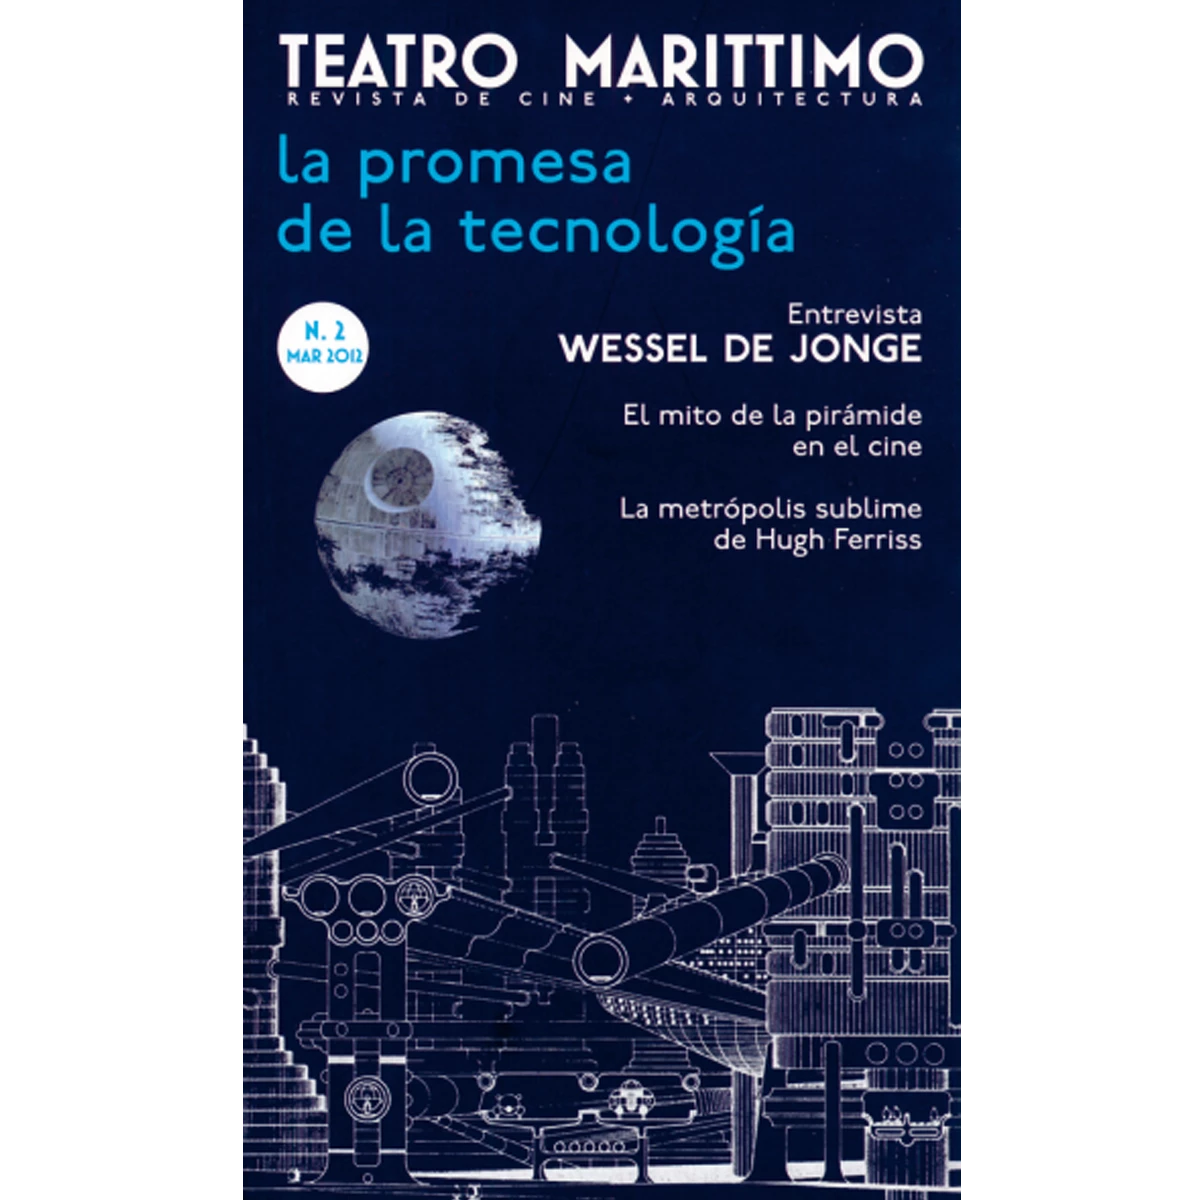 Teatro Marittimo: La promesa de la tecnología